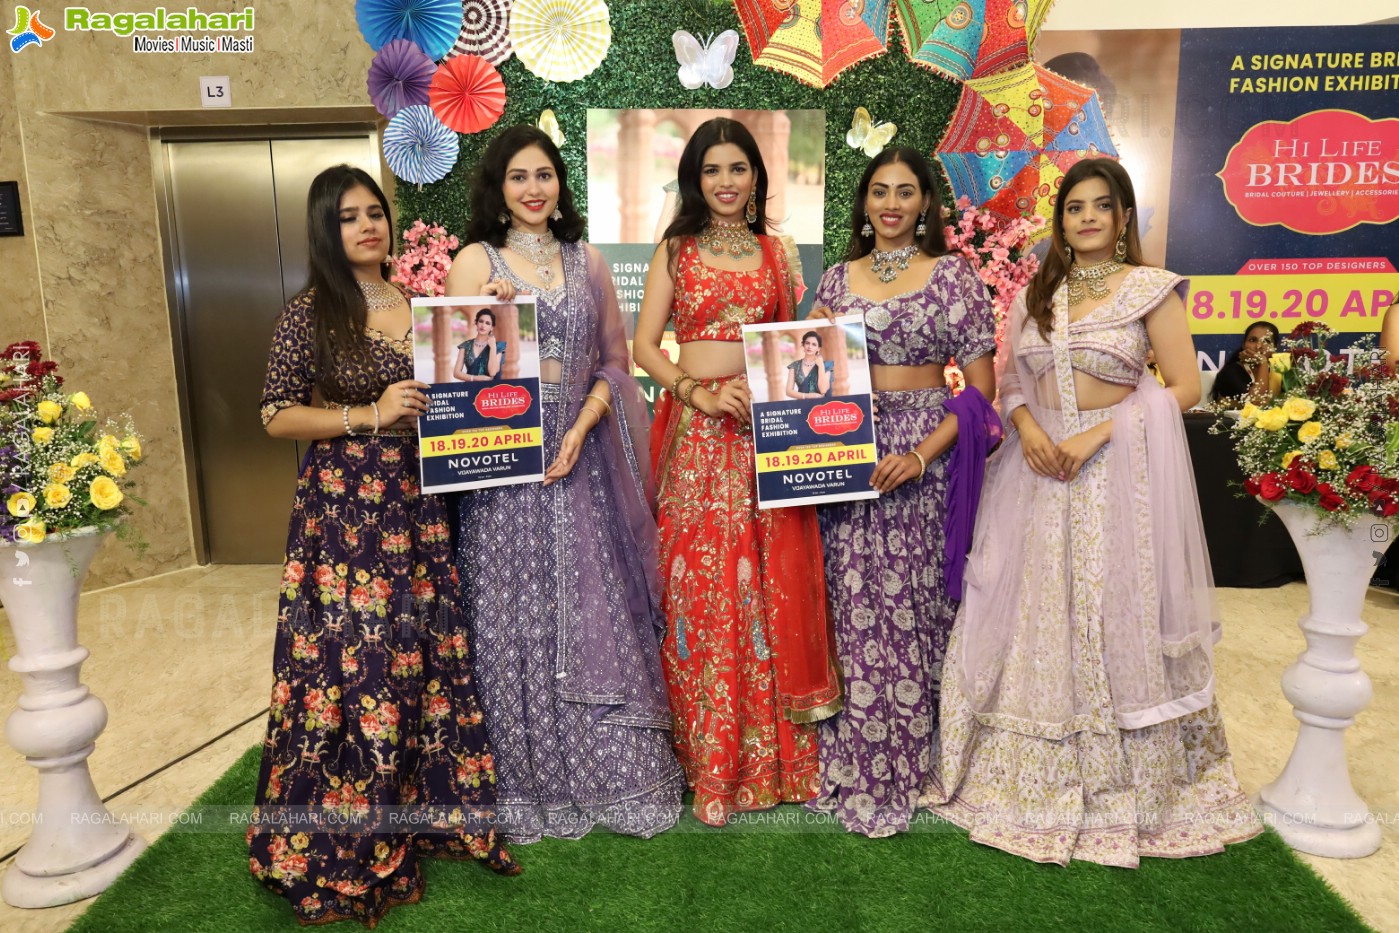 Grand Launch of Hi Life Brides Vijayawada